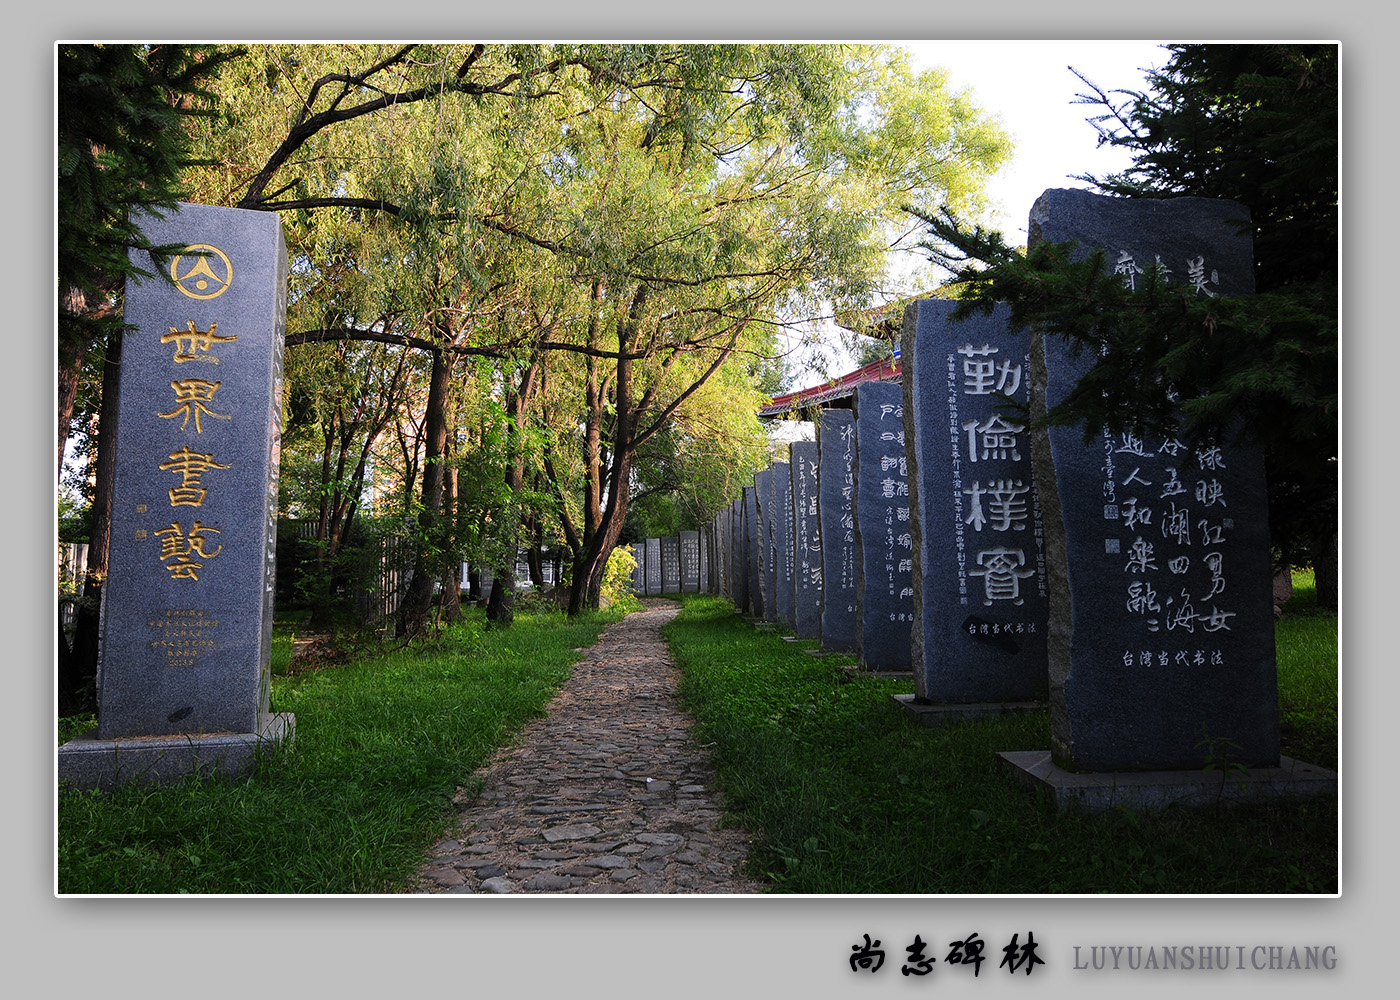 【路远水长】中国传统文化的艺术长廊--尚志碑林